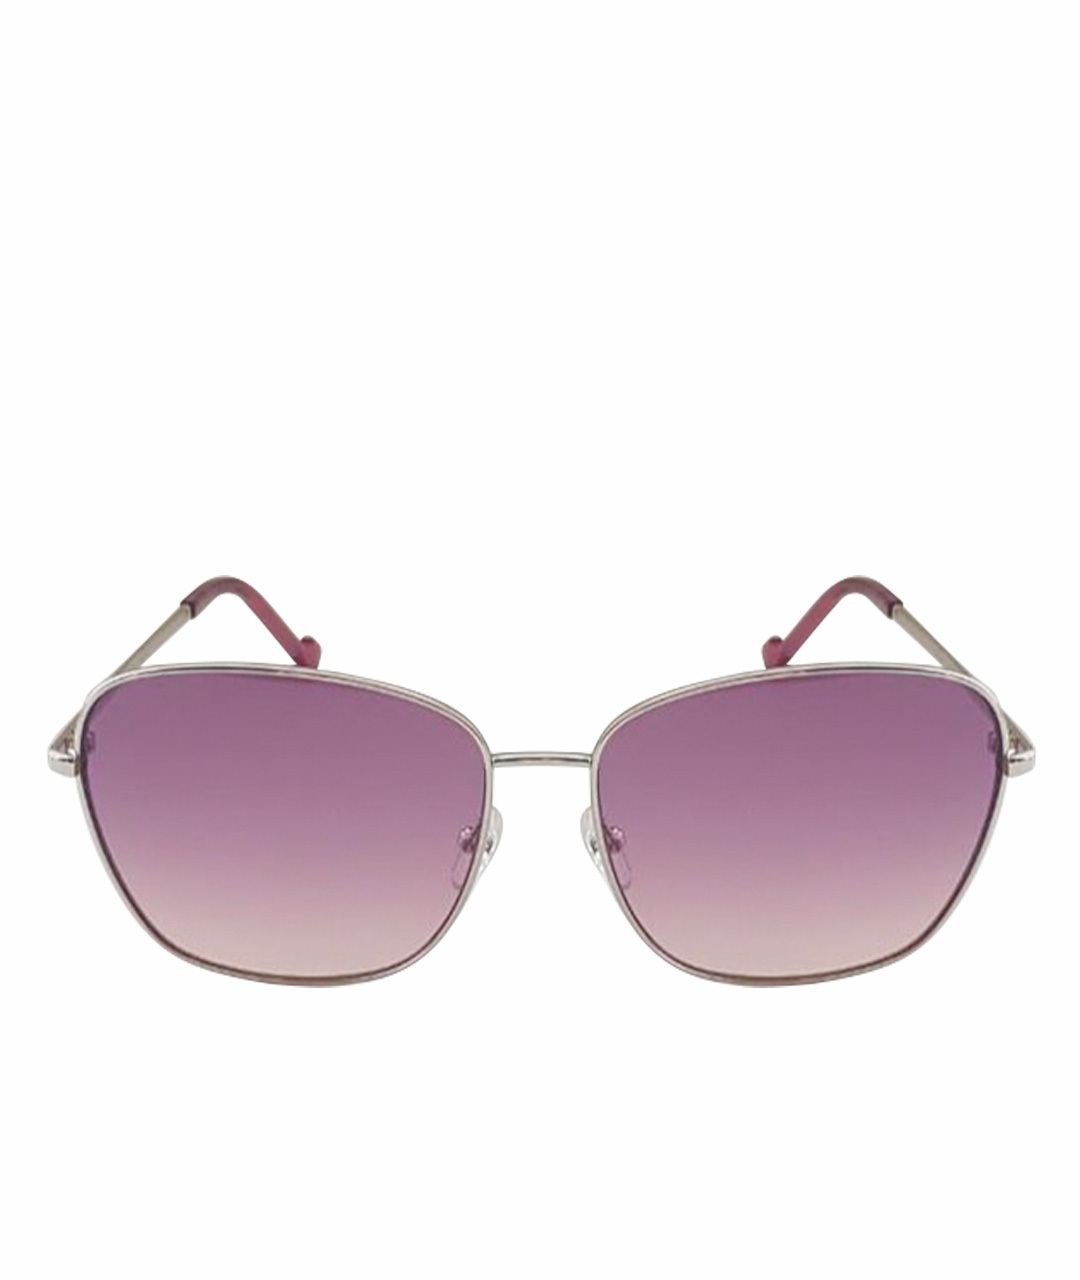 LIU JO Розовые металлические солнцезащитные очки, фото 1